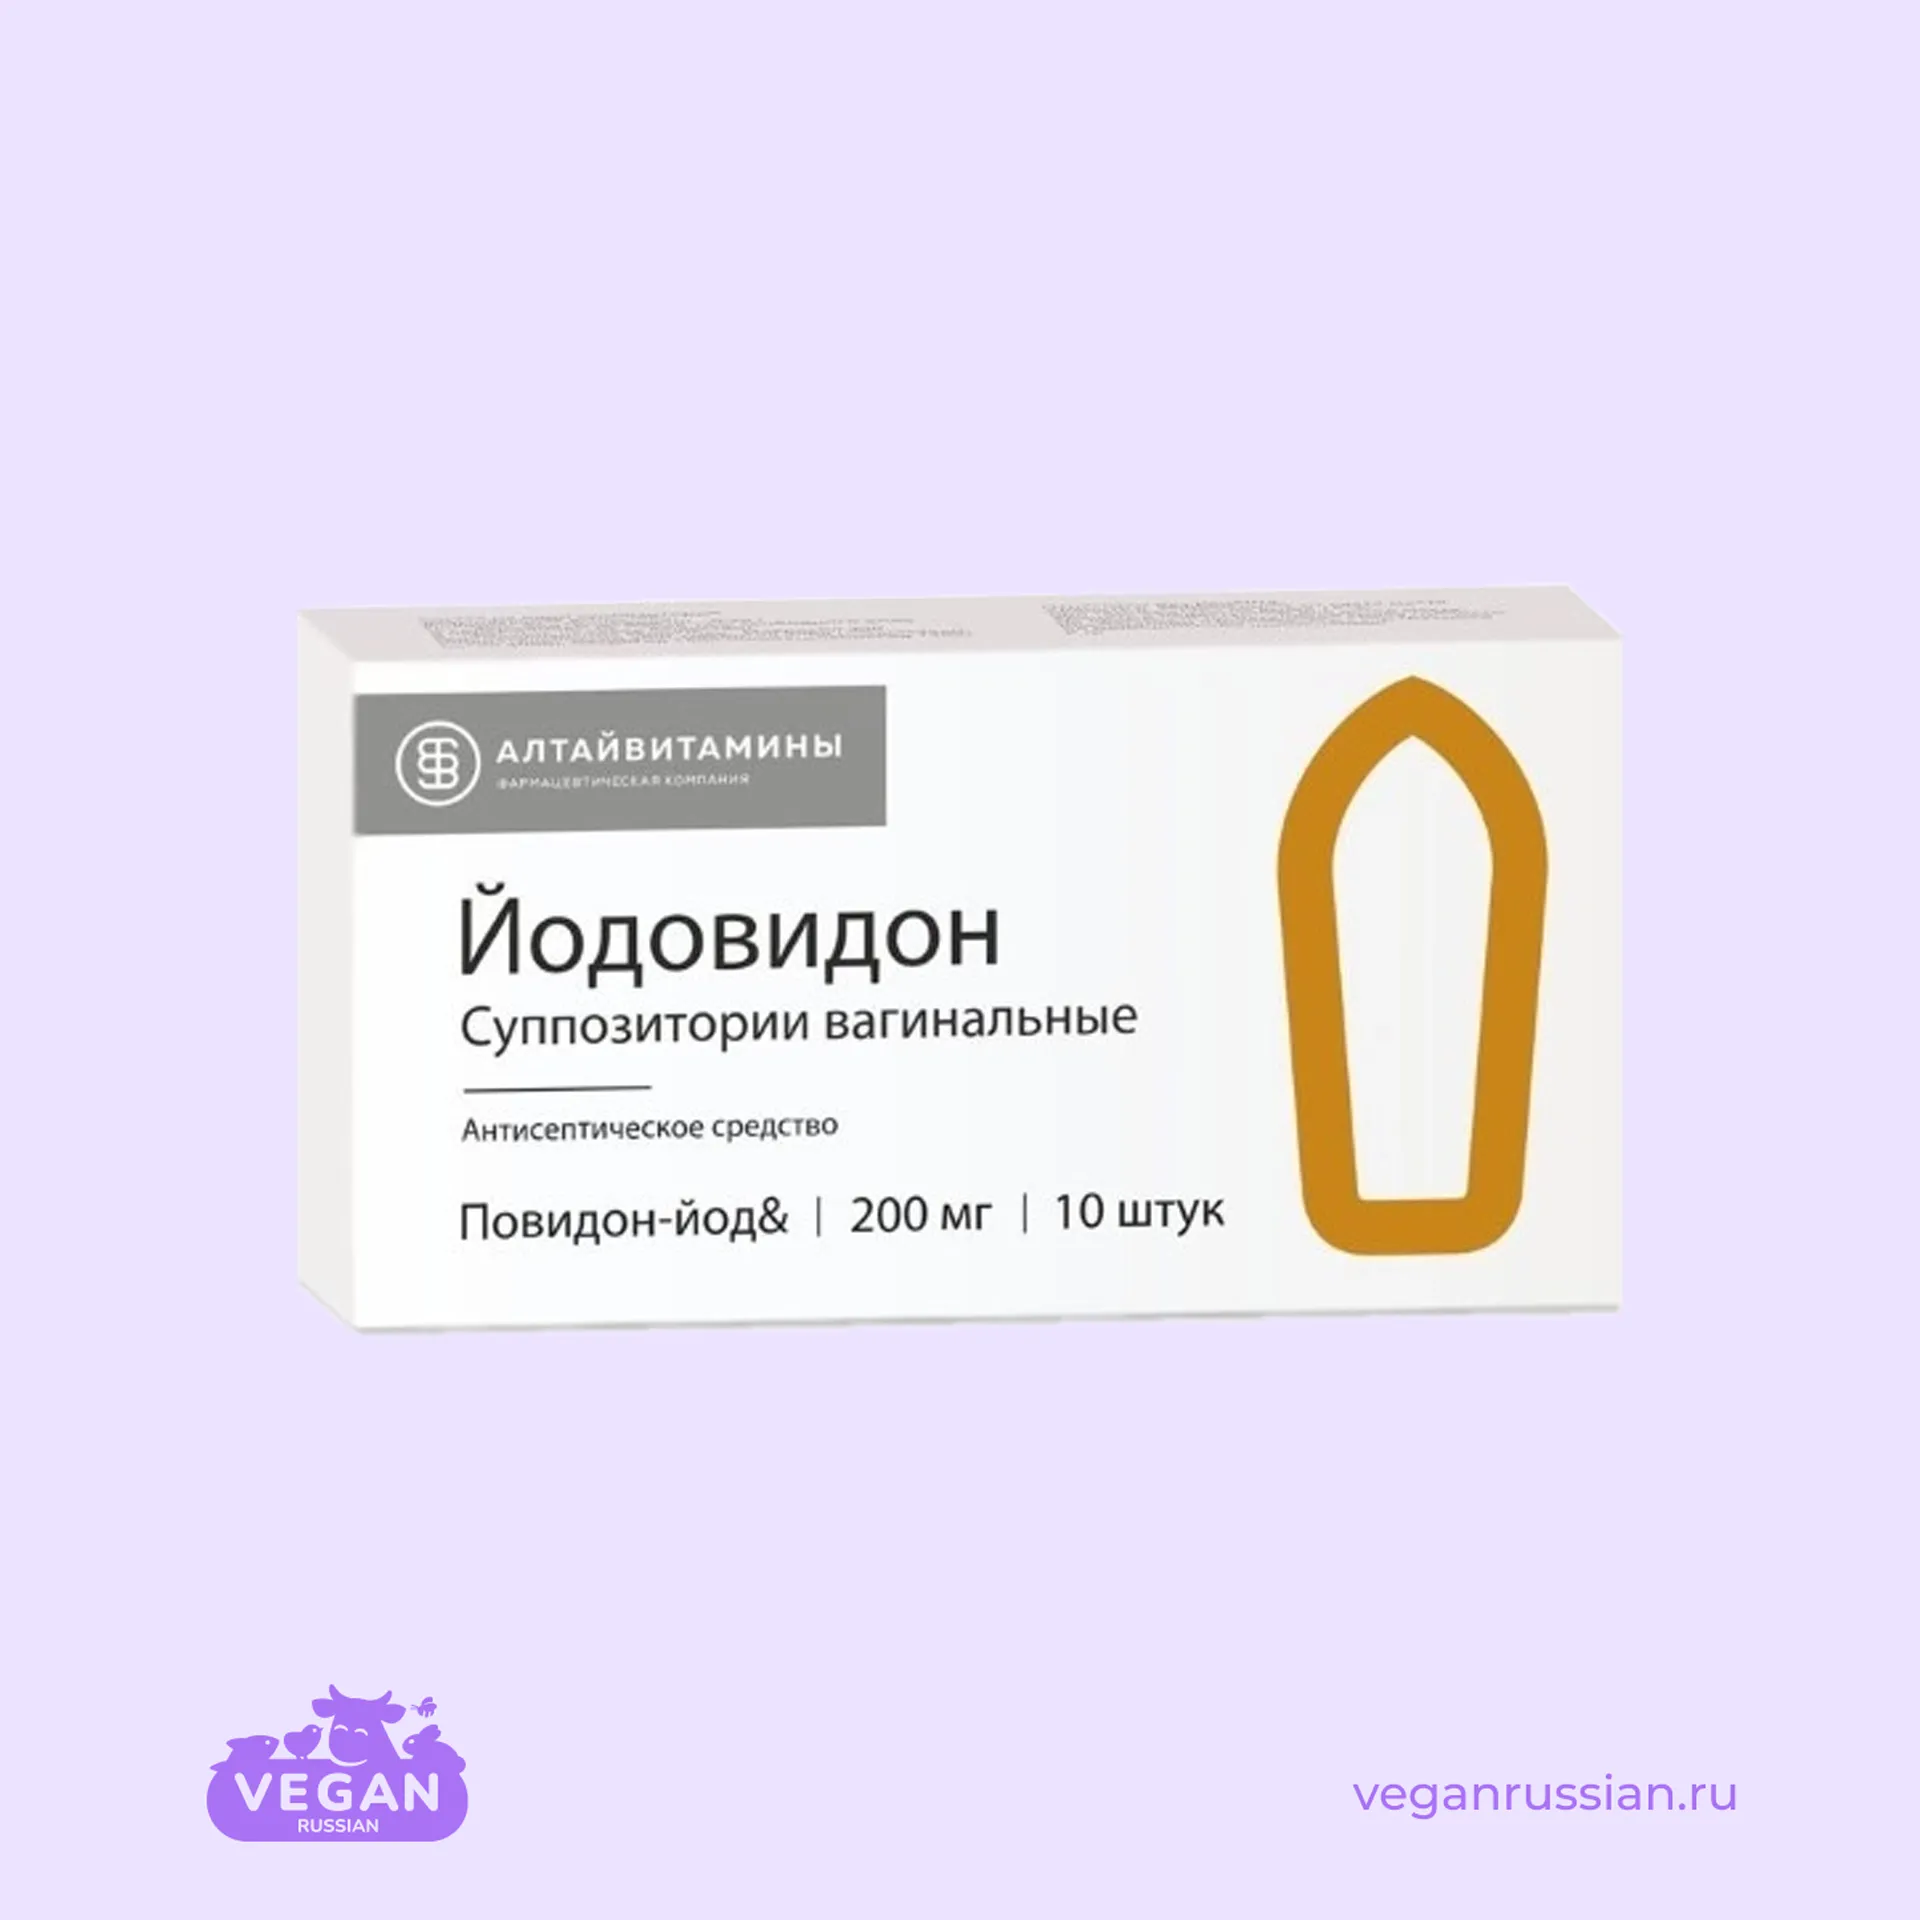 Суппозитории вагинальные Йодовидон Алтайвитамины 10 шт 200 мг